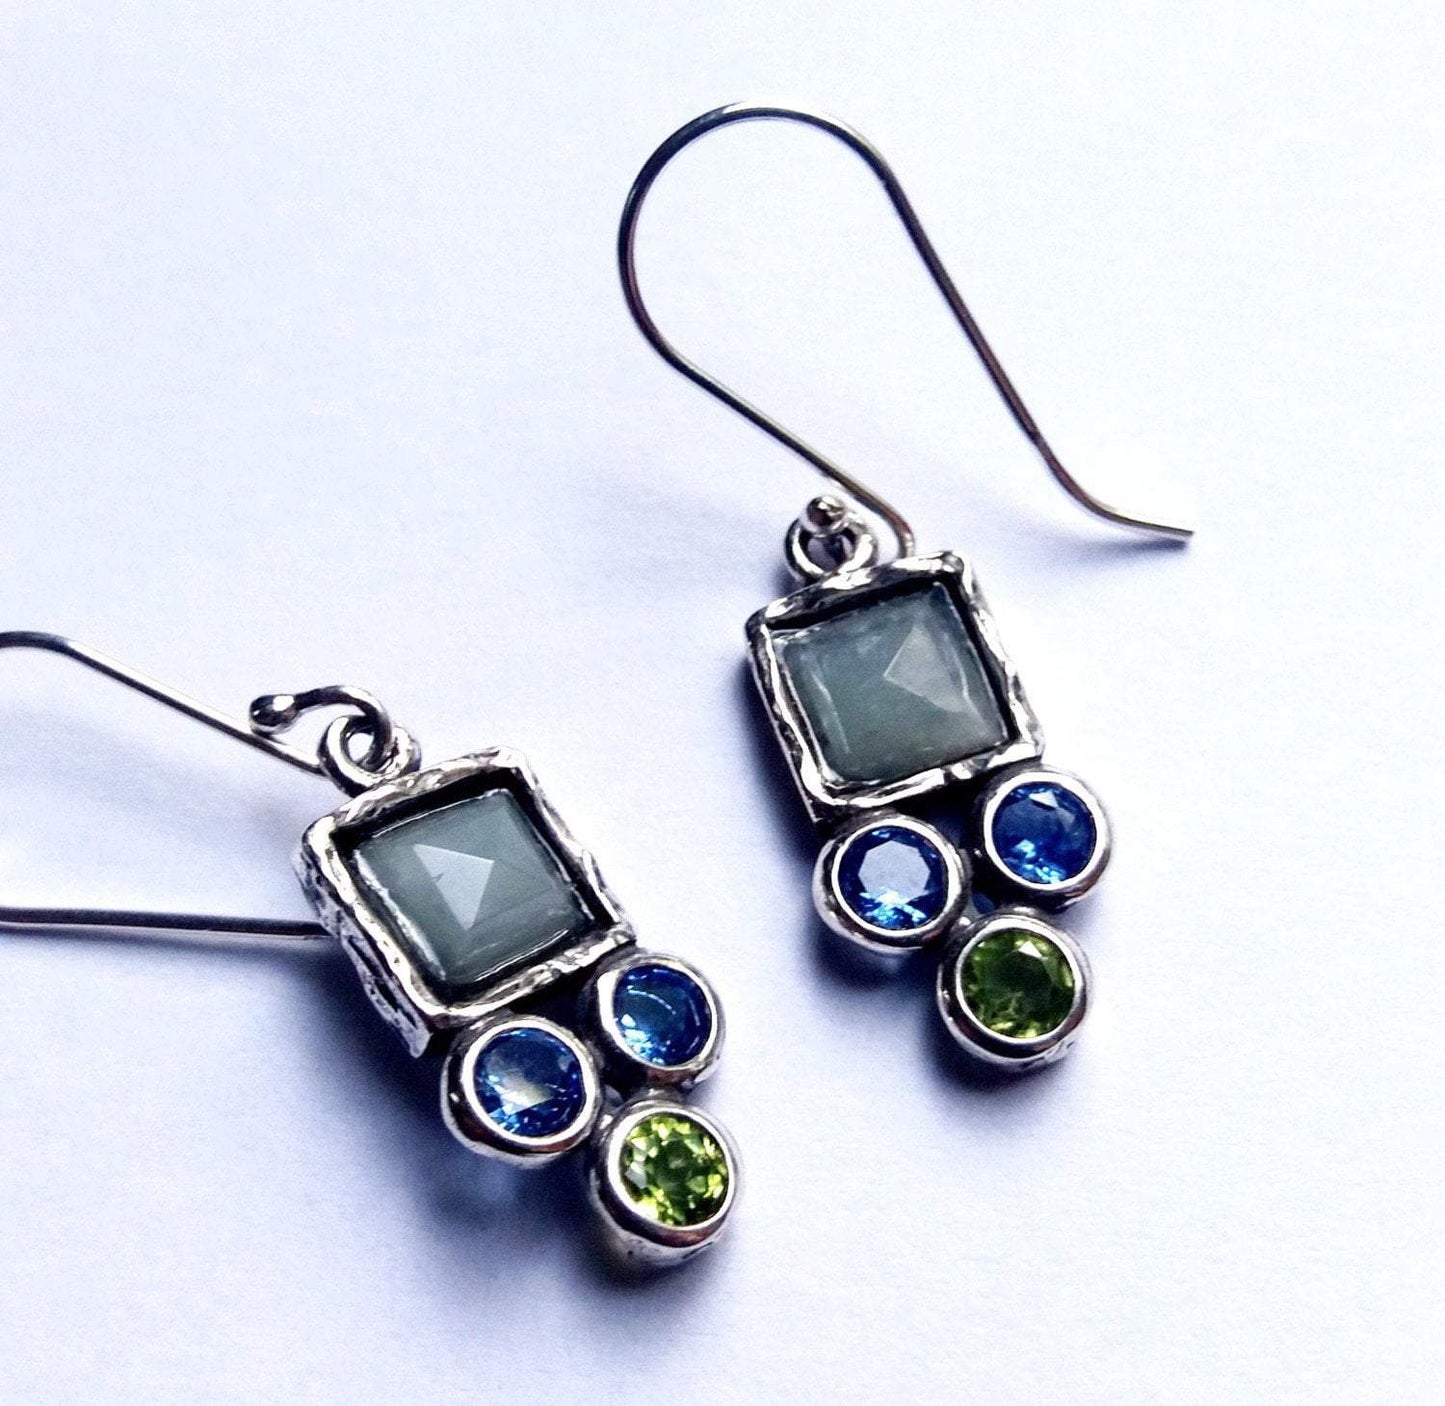 Bluenoemi Jewelry Earrings silver Roman glass jewelry dangling earrings Israeli gemstones earrings jewelry